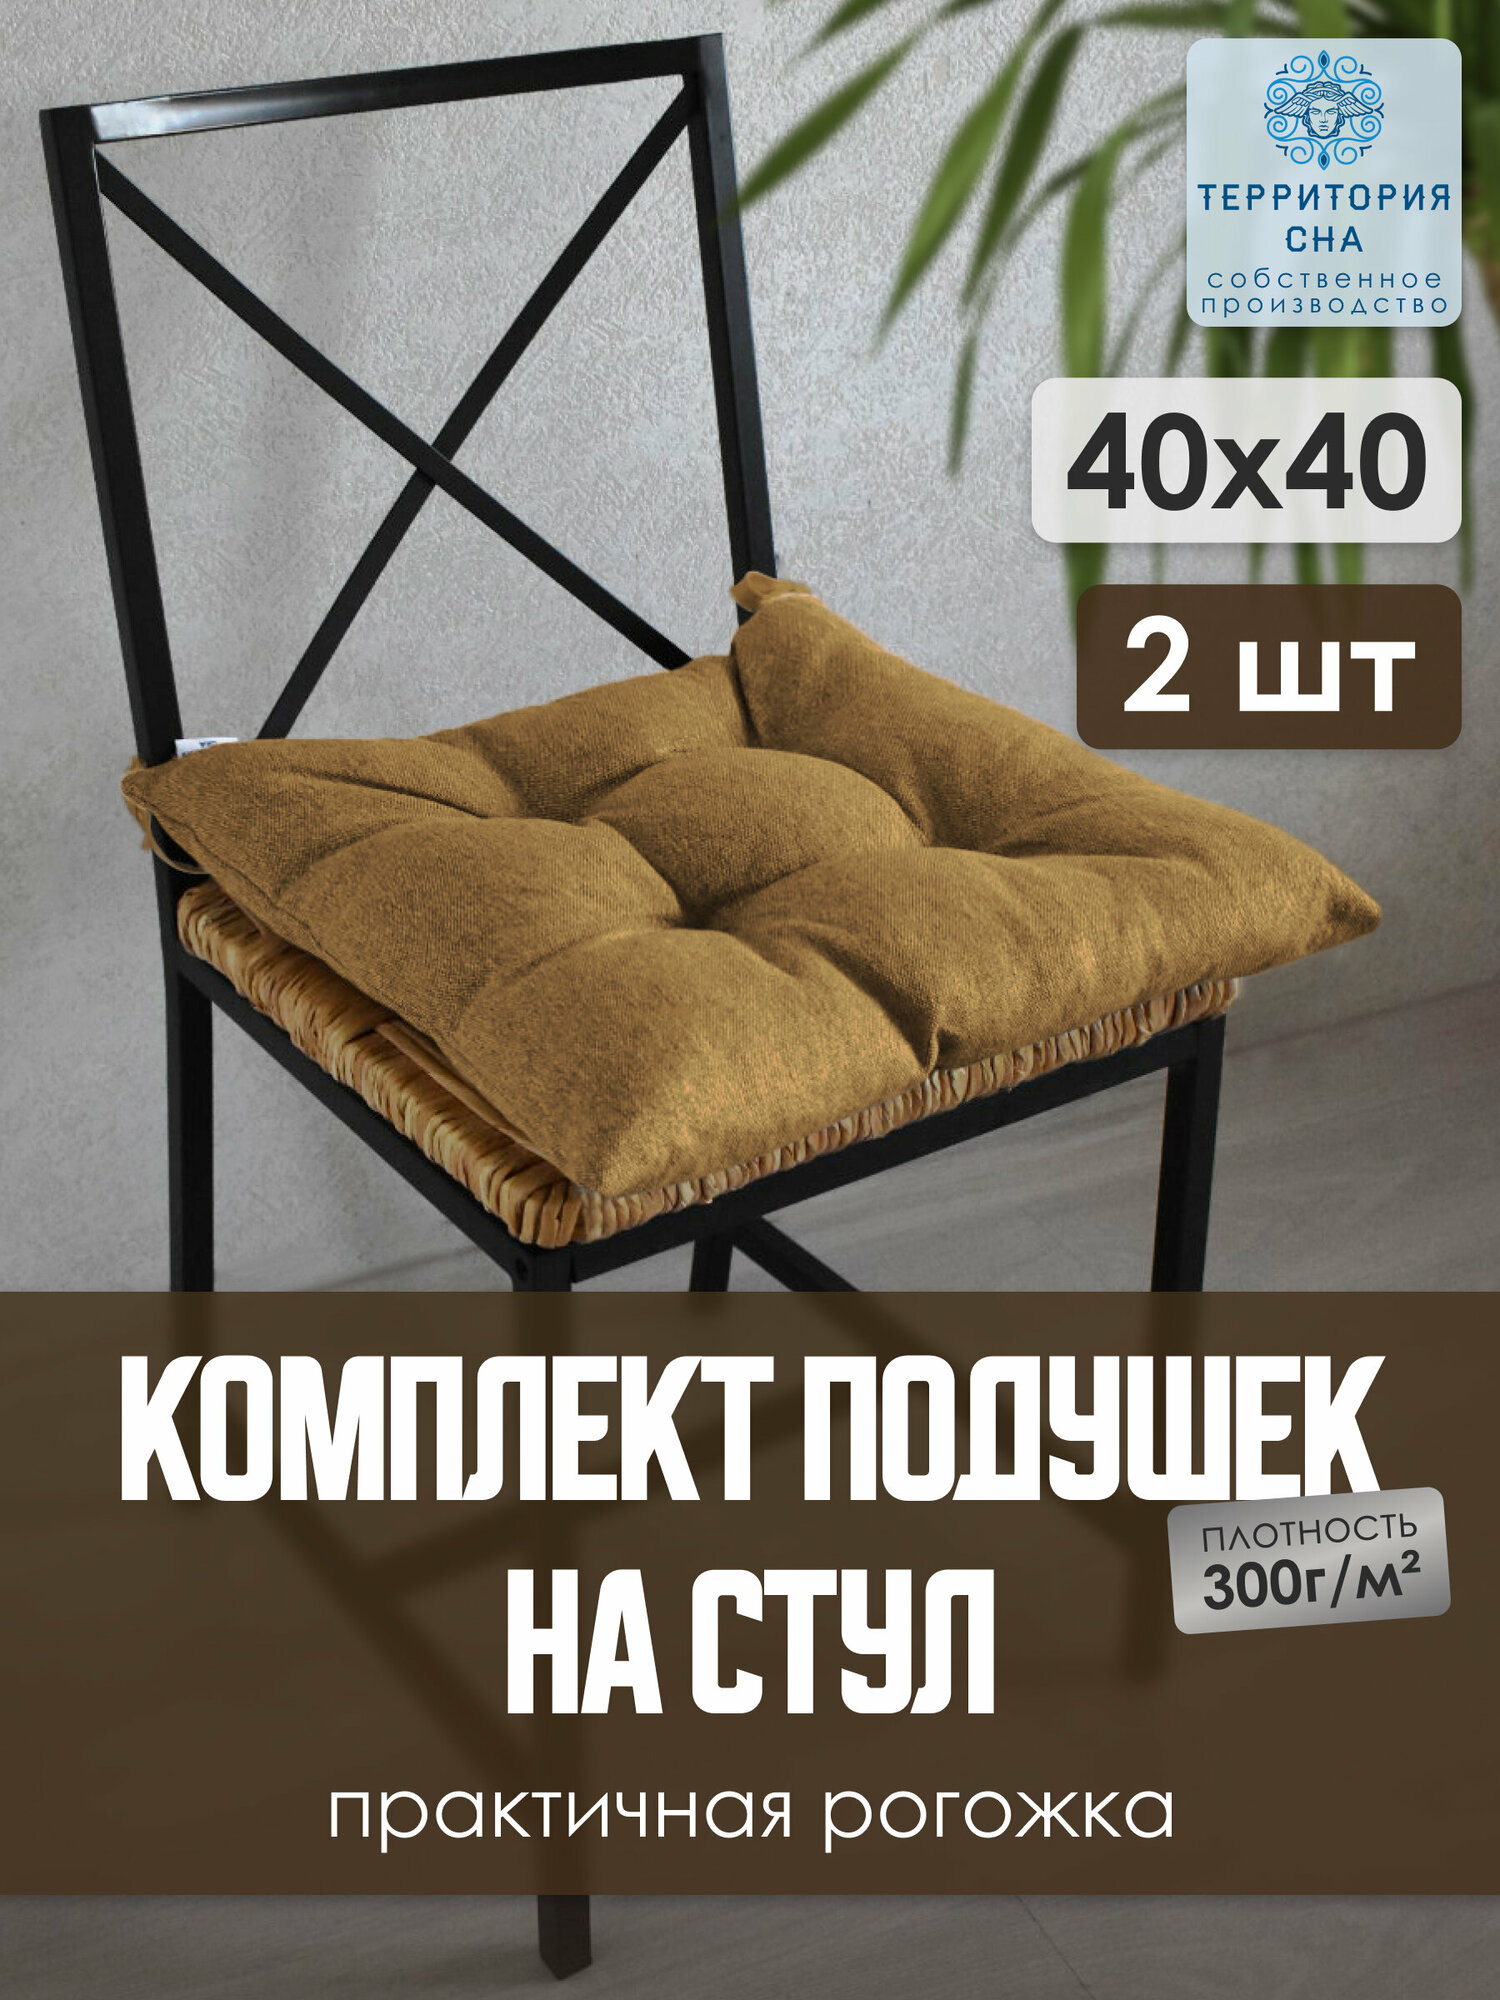 Подушка на стул из рогожки, цвет: корица, размер 40х40